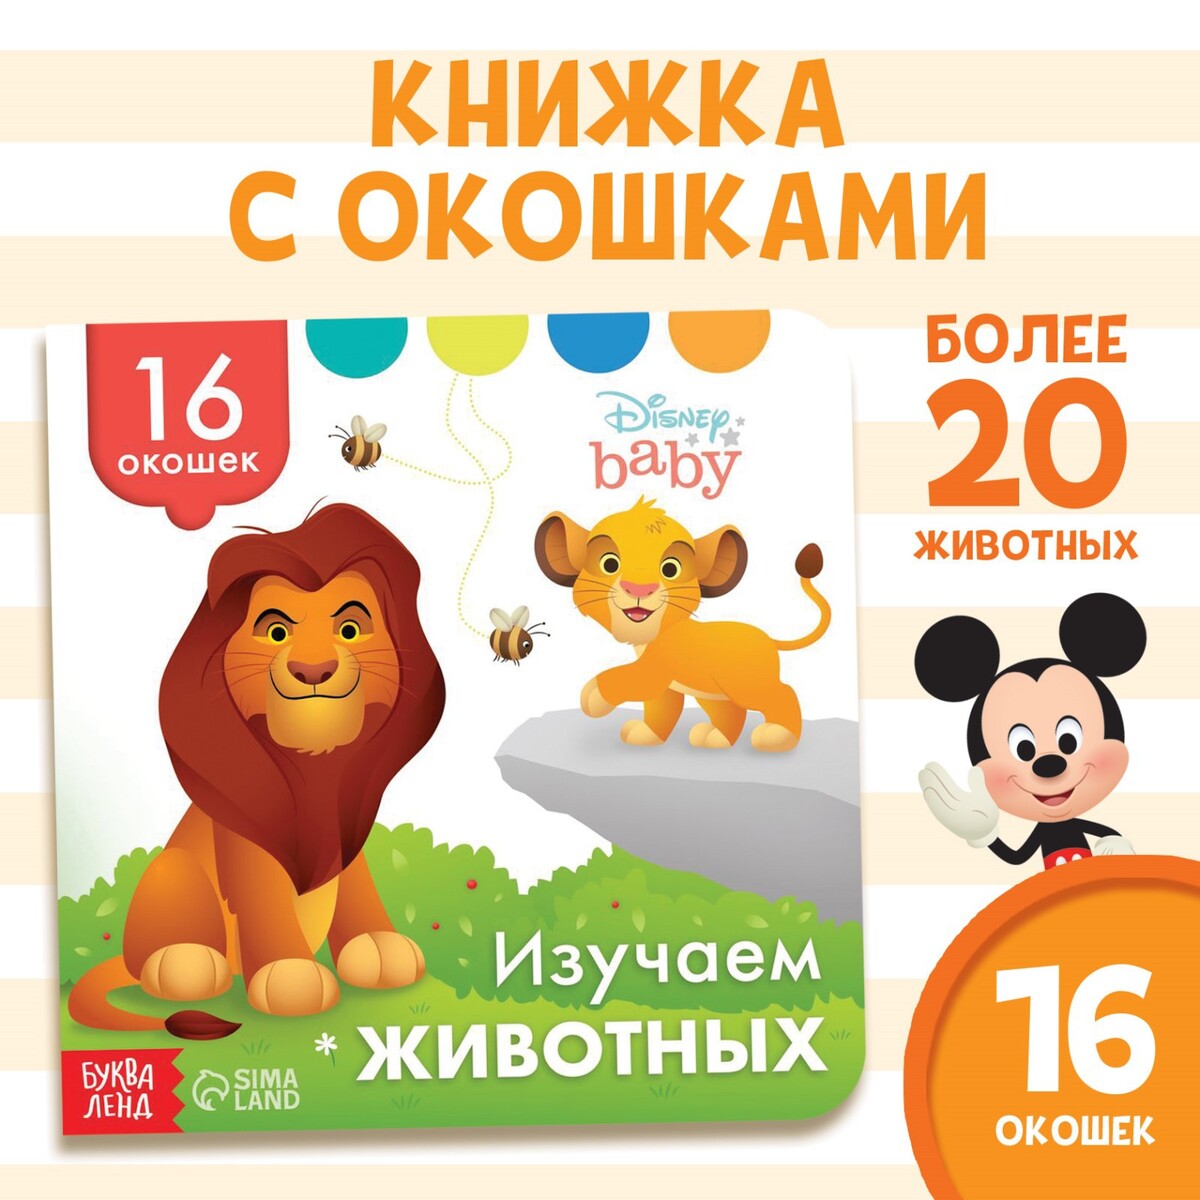 Книга с окошками Disney 02131504: купить за 180 руб в интернет магазине сбесплатной доставкой